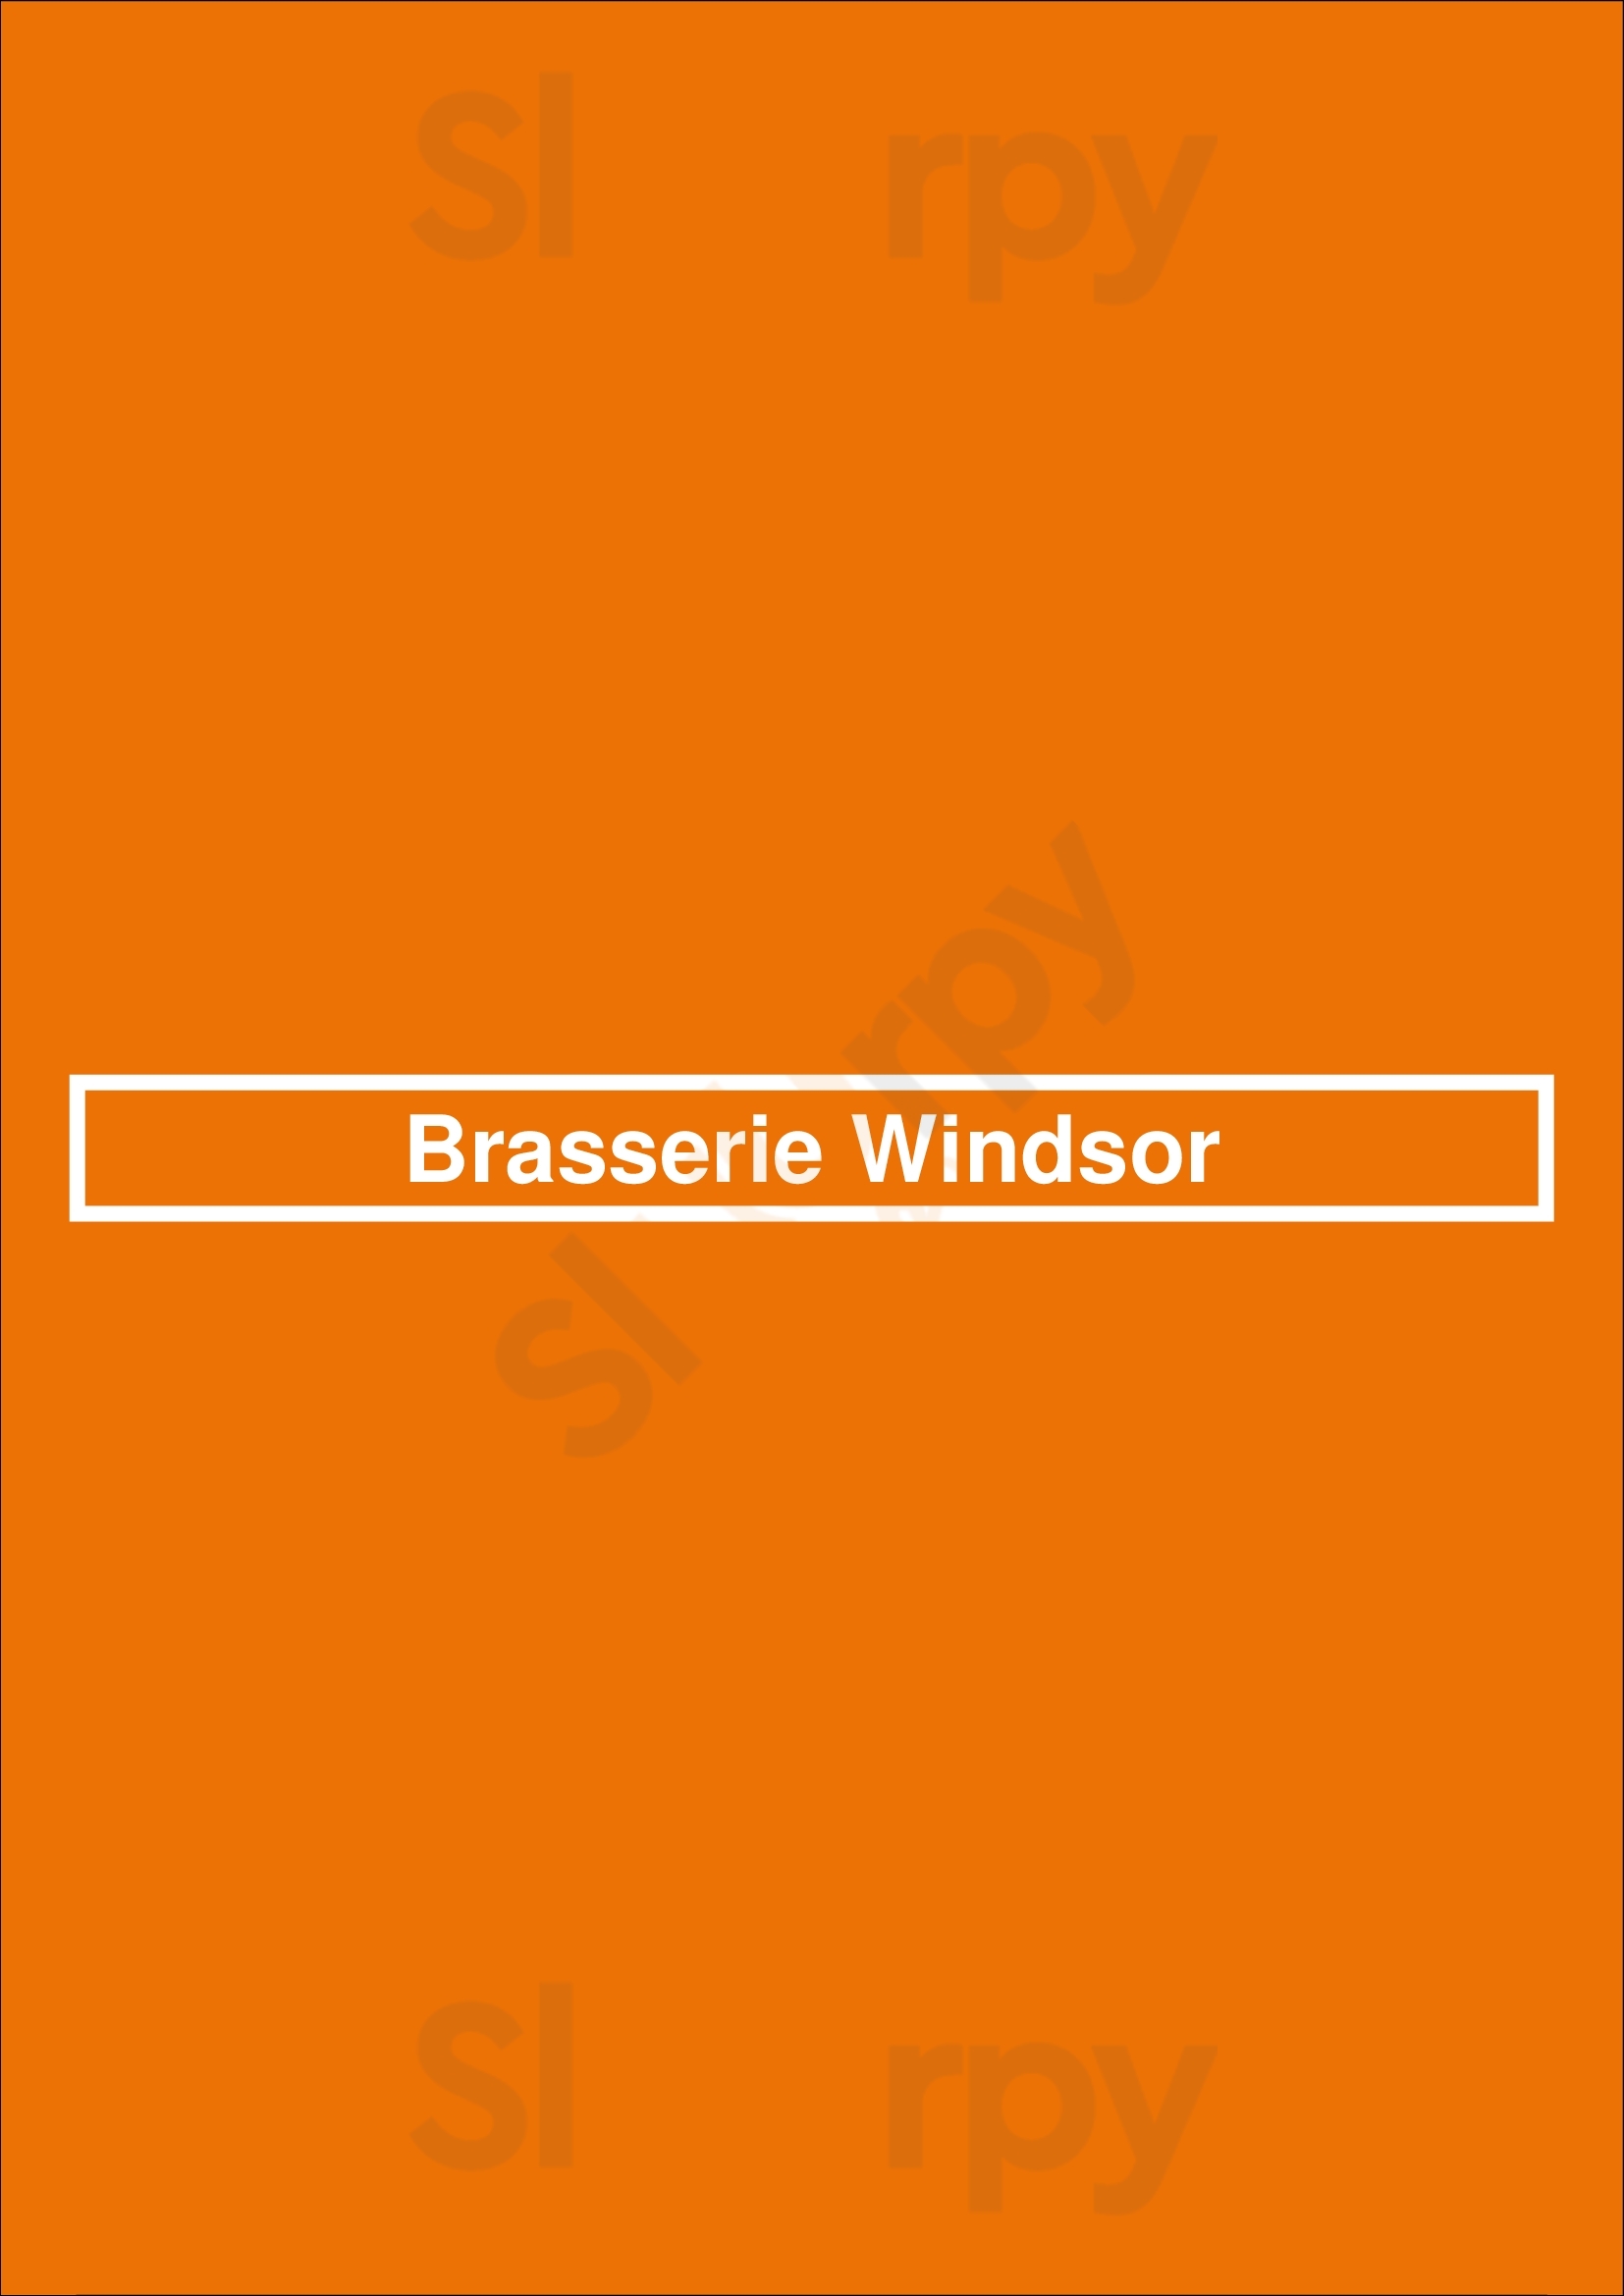 Brasserie Windsor Anvers Menu - 1